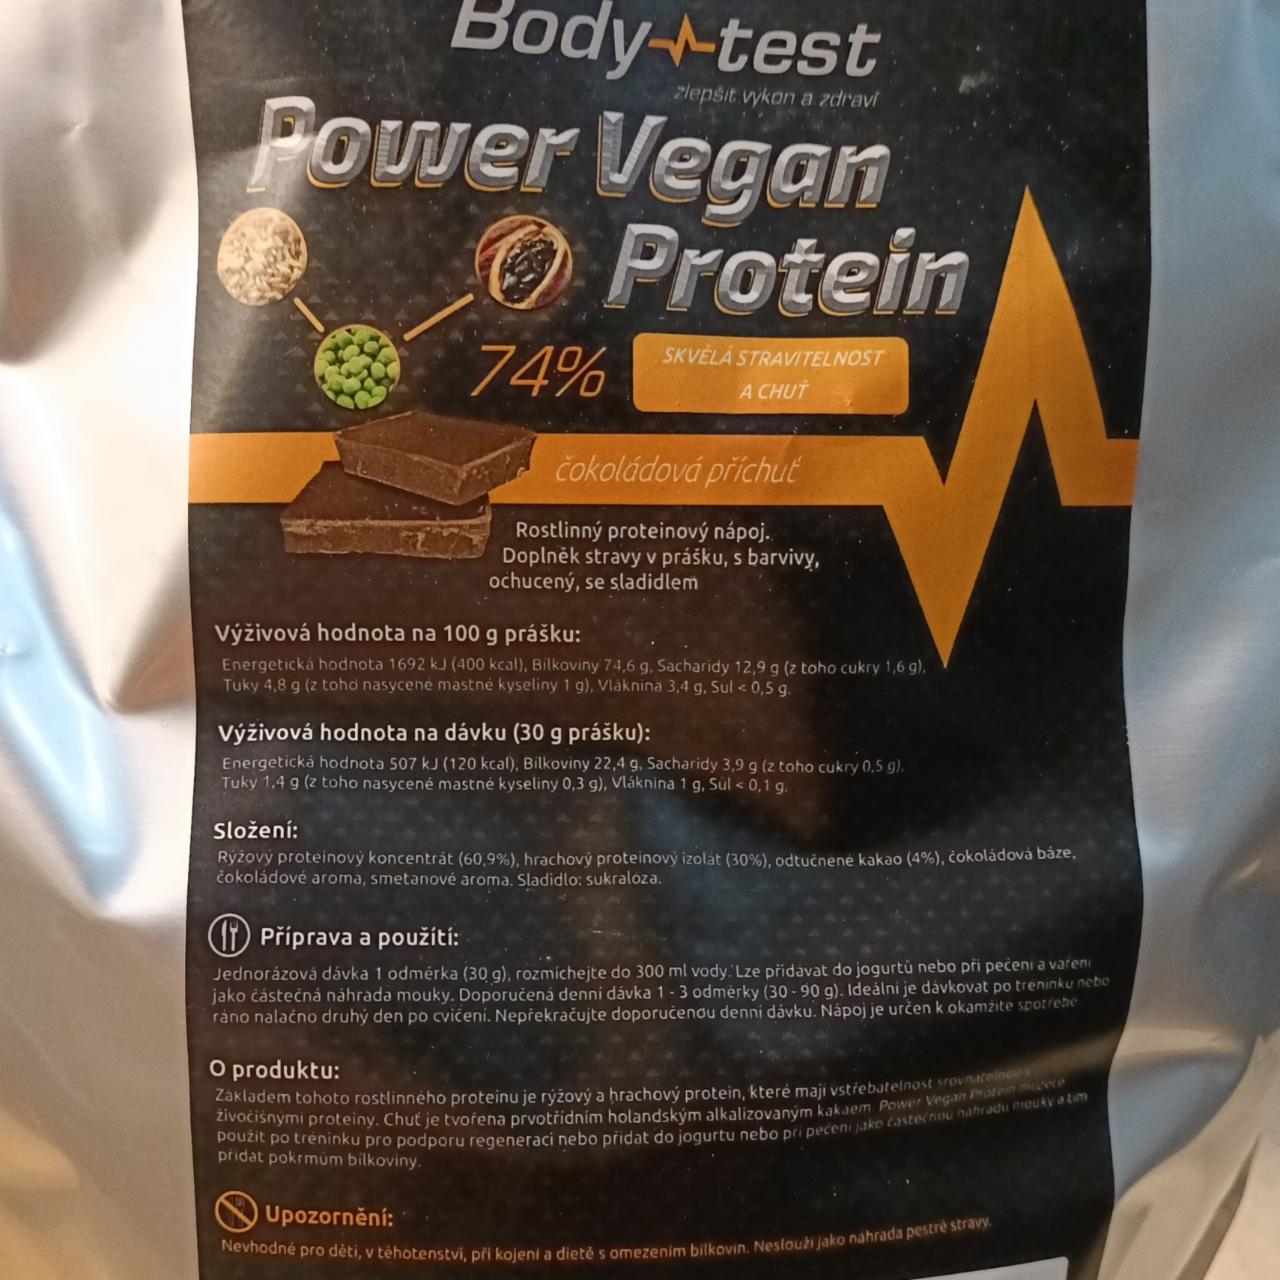 Fotografie - Power Vegan Protein 74% čokoládová příchuť Body test